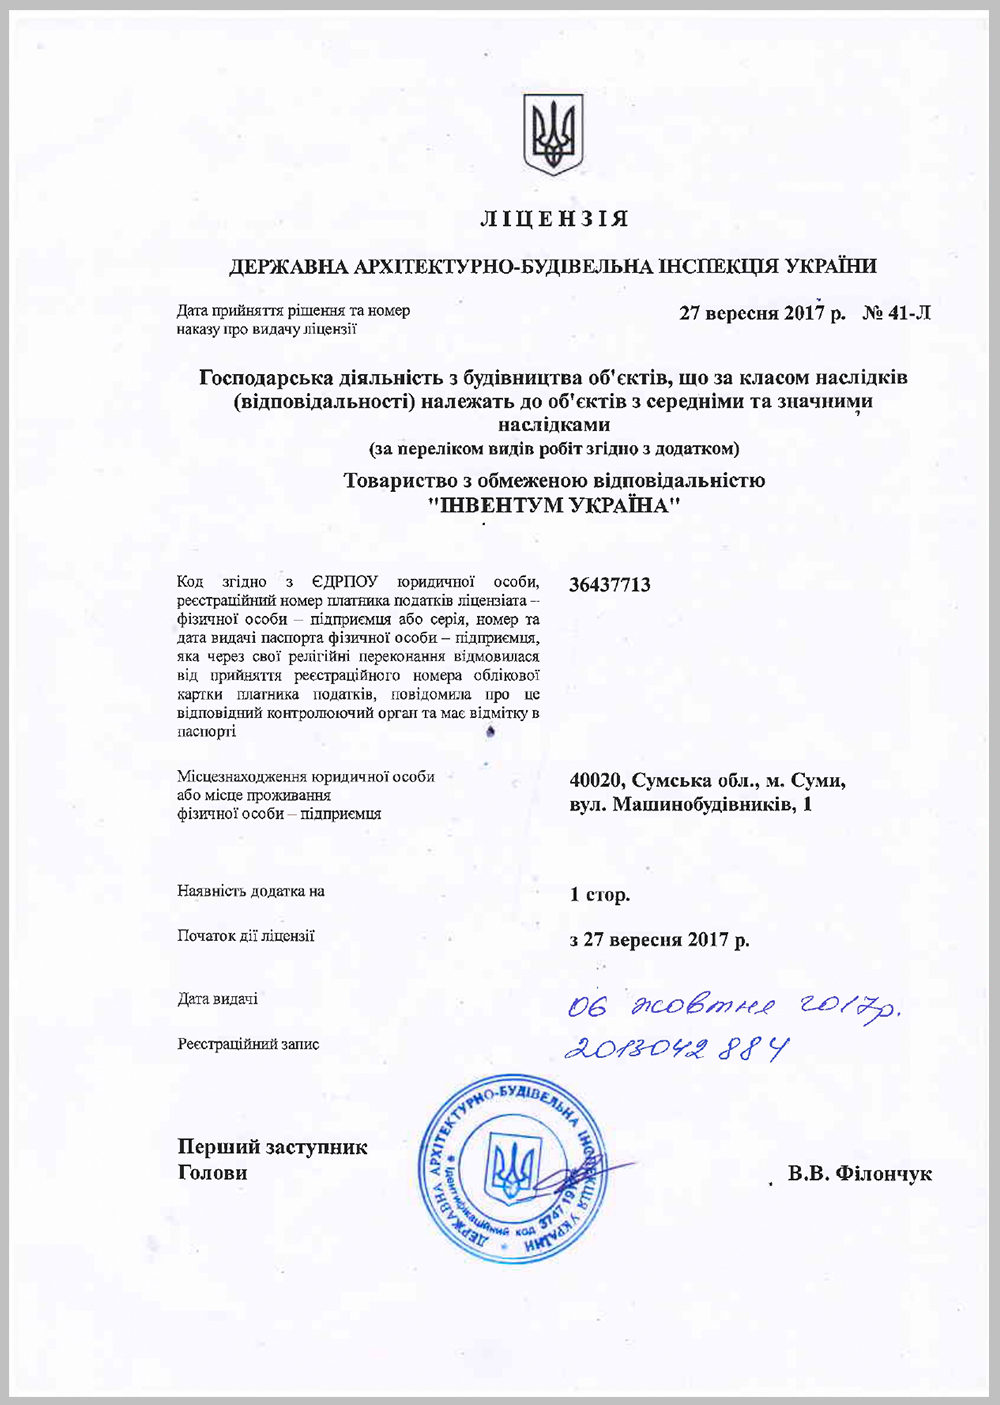 Construction License LTD Inventum Ukraine